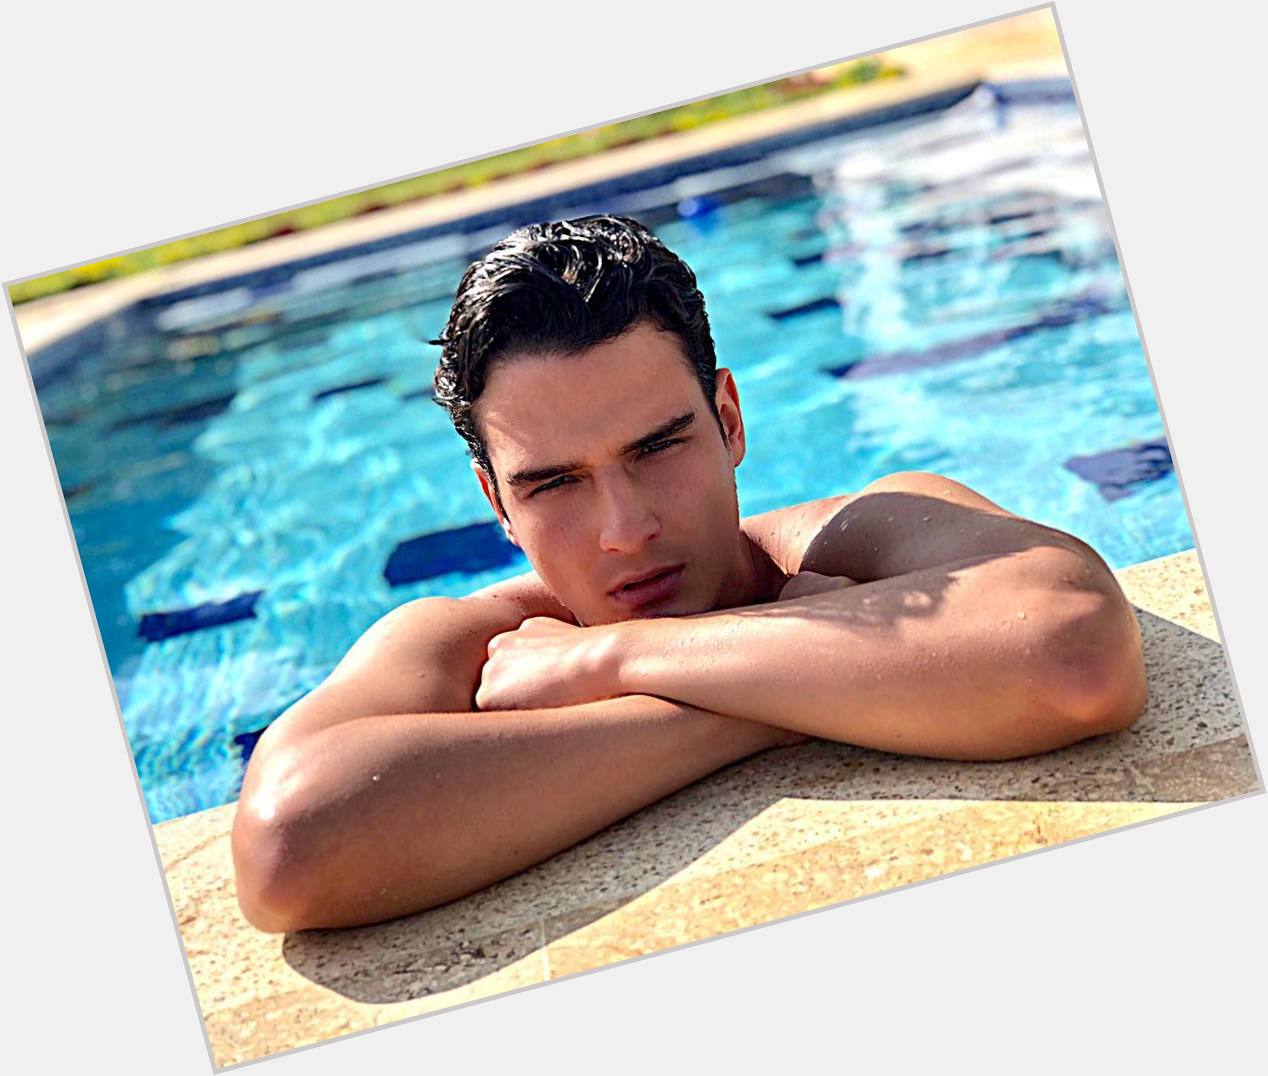 <a href="/hot-men/eduardo-perez/where-dating-news-photos">Eduardo Perez</a>  